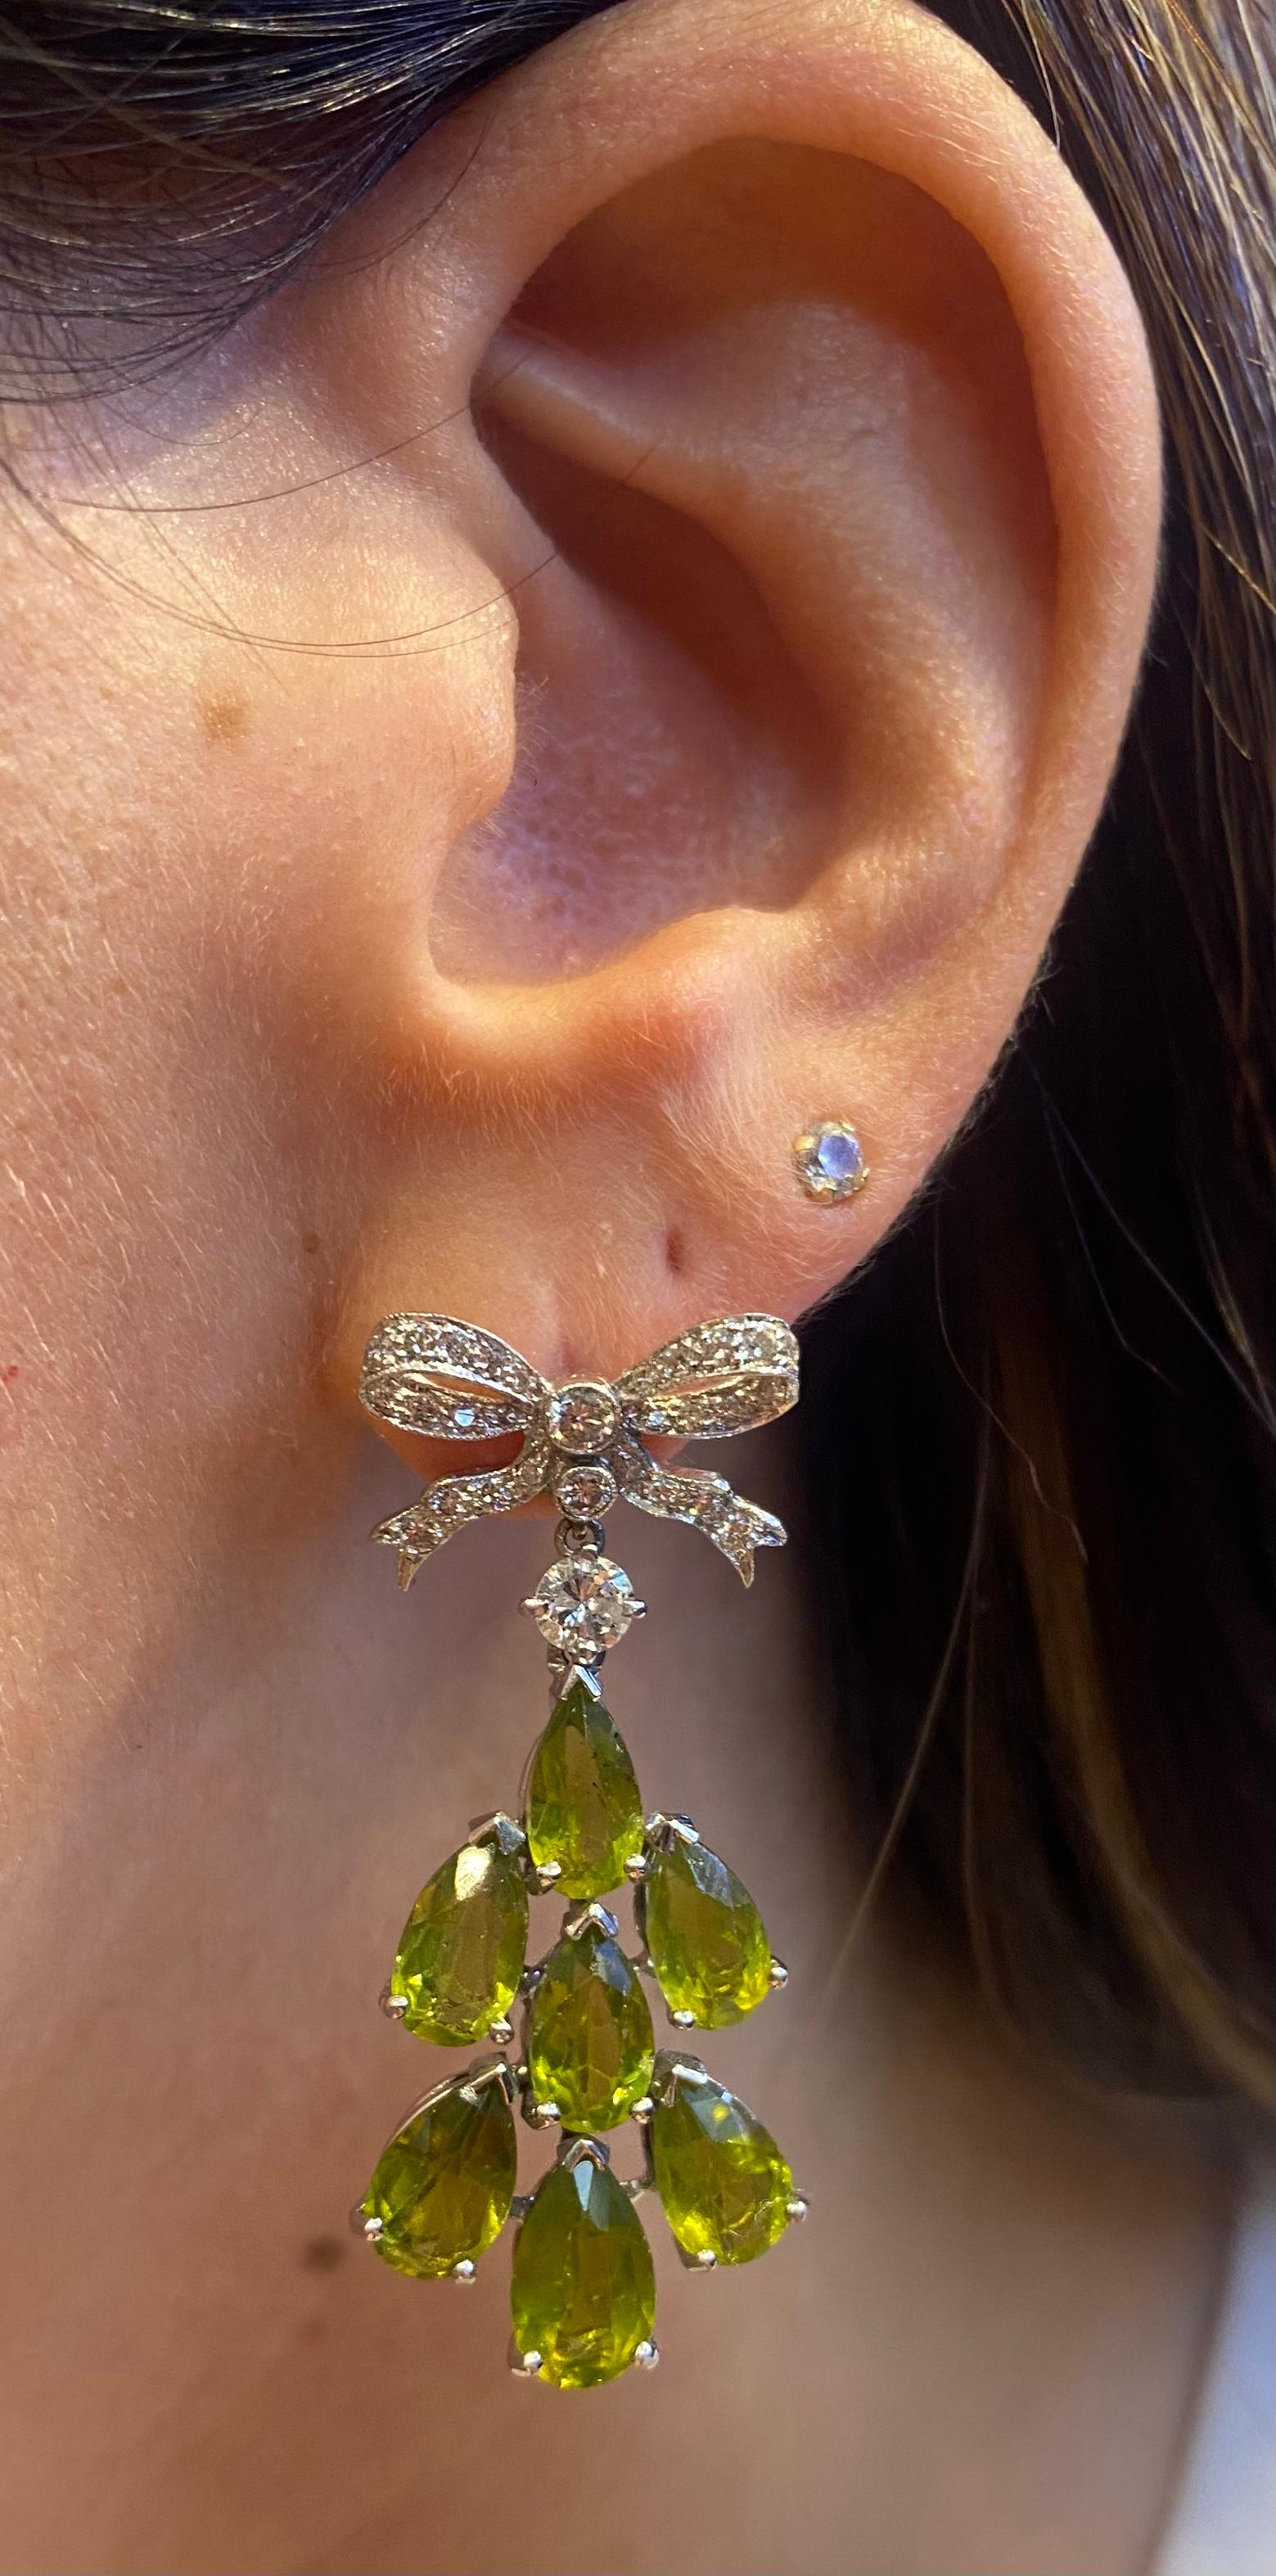 Boucles d'oreilles péridot et diamant

Paire de boucles d'oreilles en or blanc serties de diamants ronds et de péridot en forme de poire.

Longueur : 1.5